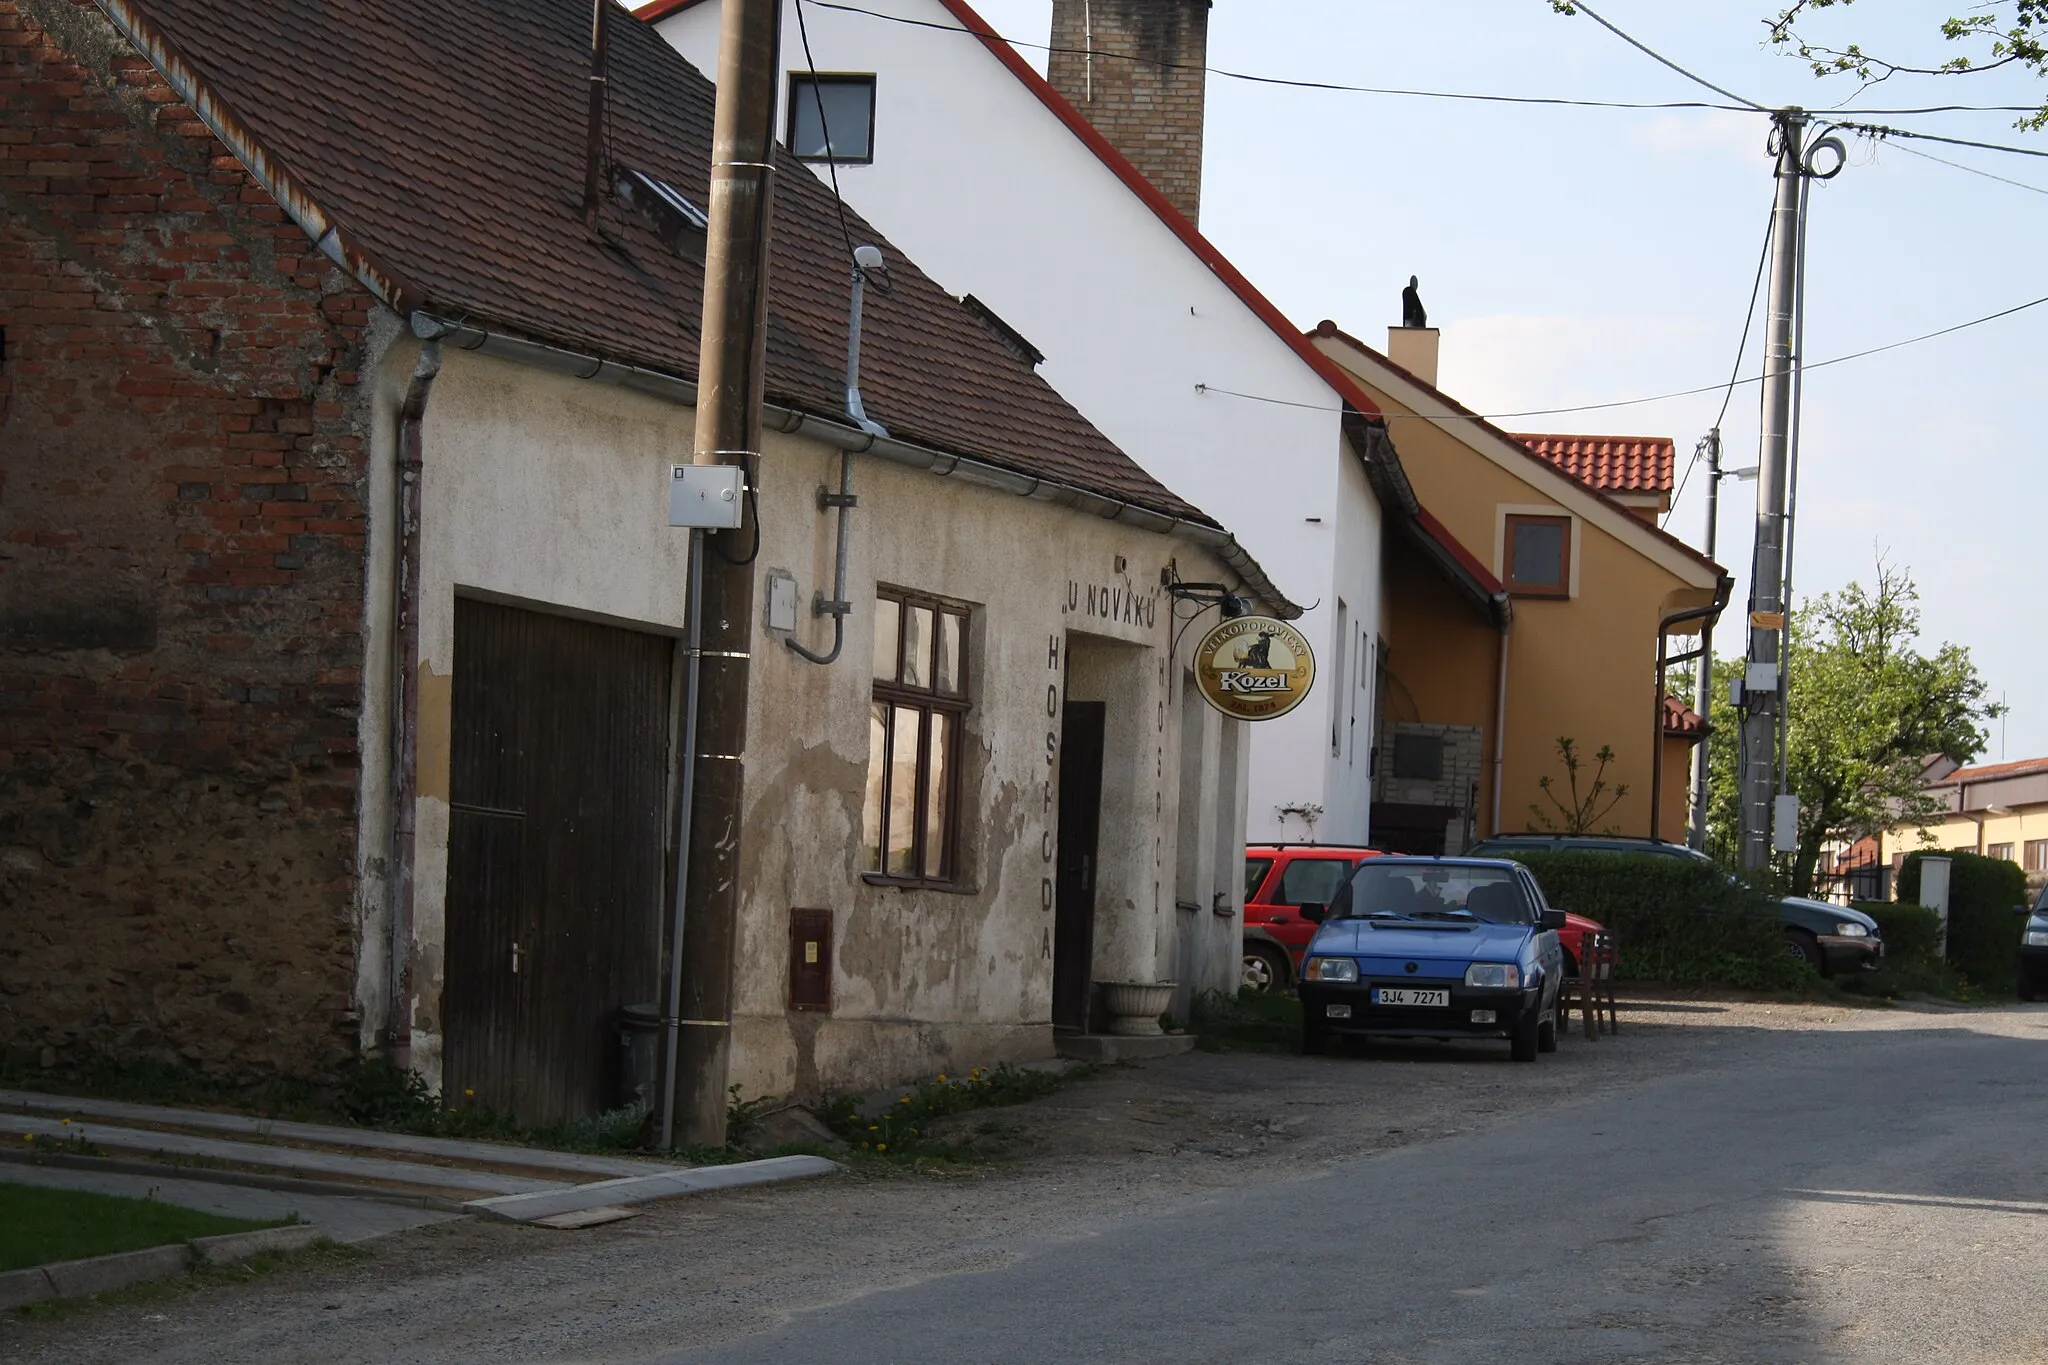 Photo showing: U Nováků pub in Předín, Czech Republic.